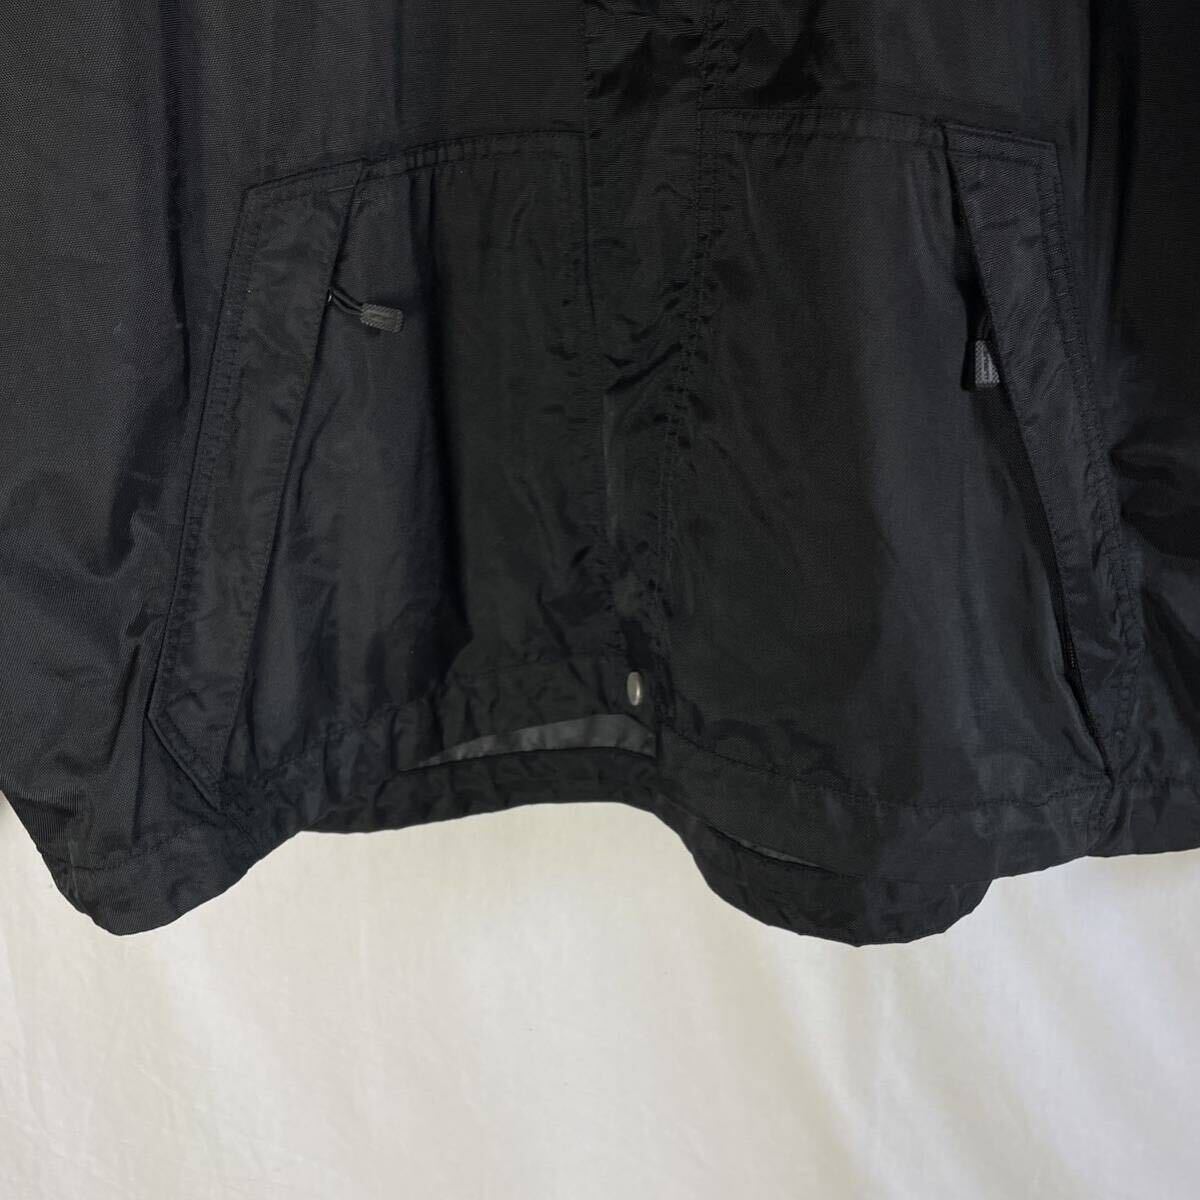  Carhartt nylon jacket old clothes black XL-R size 